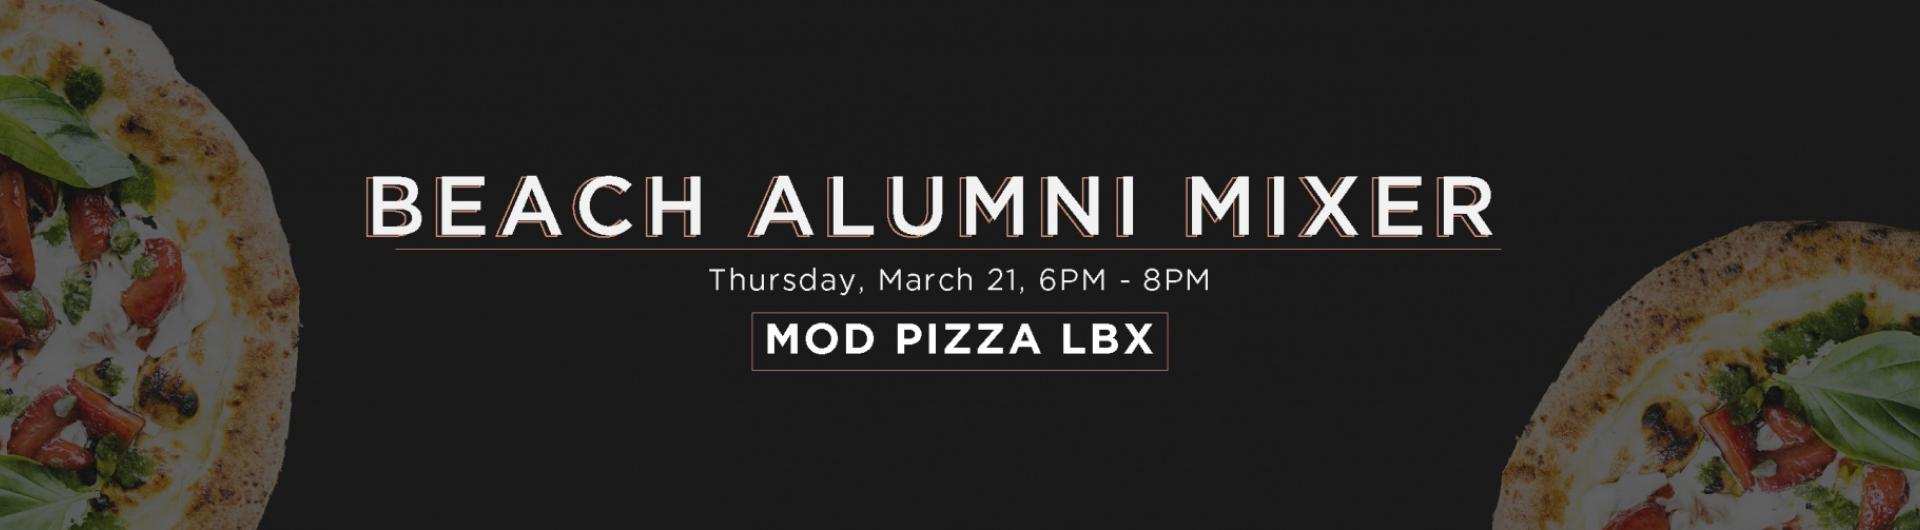 Beach Alumni Mixer at MOD Pizza